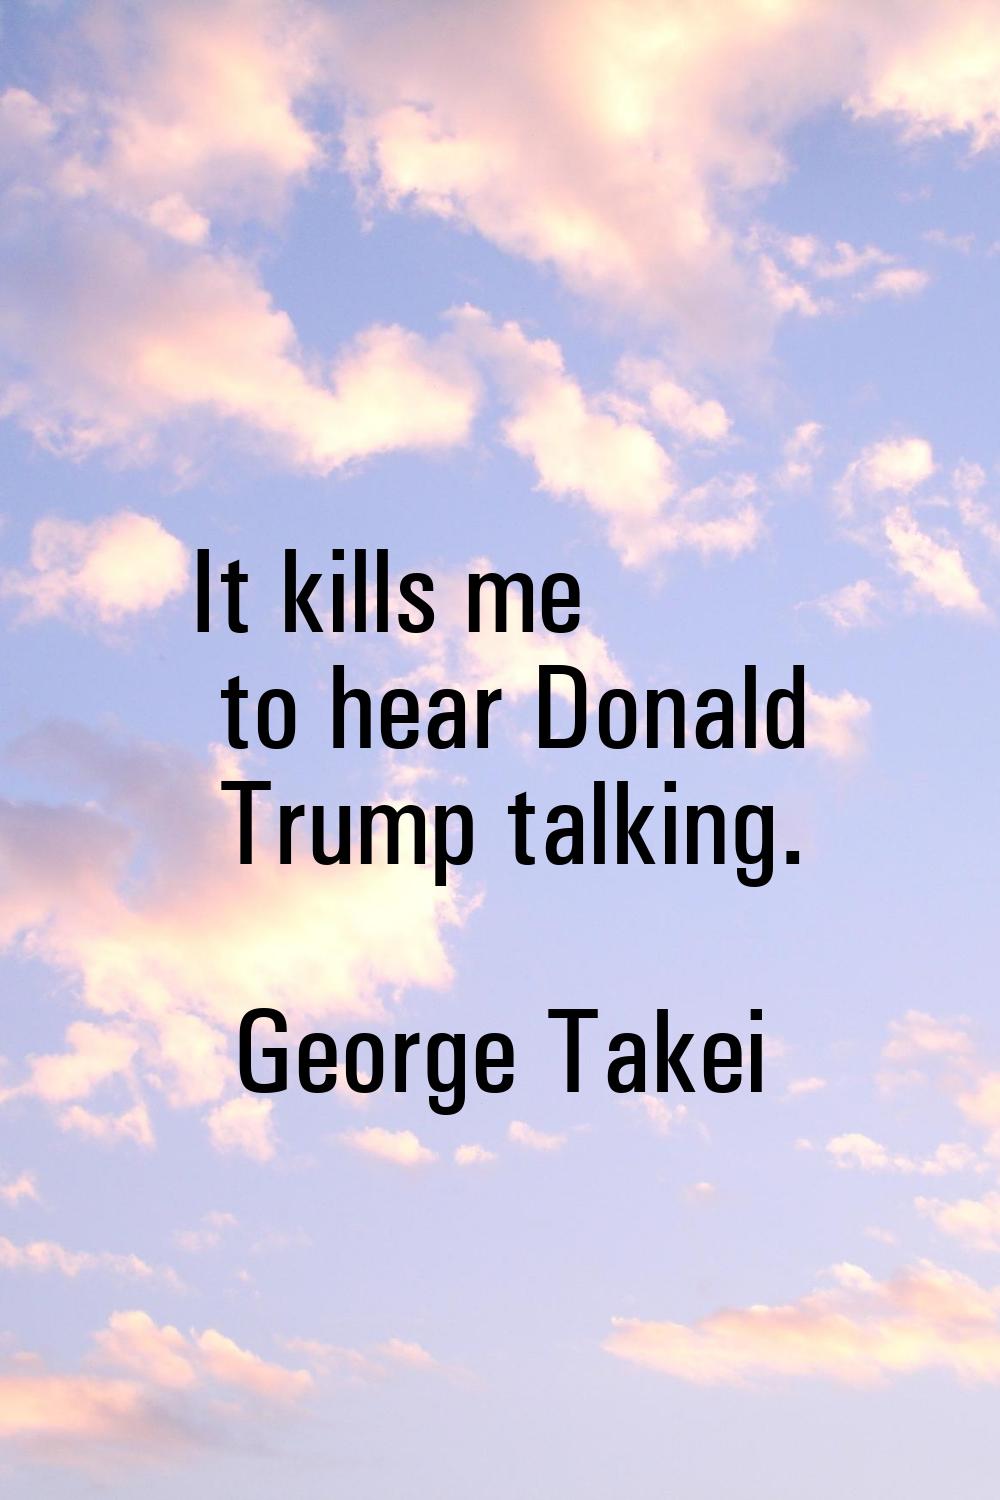 It kills me to hear Donald Trump talking.